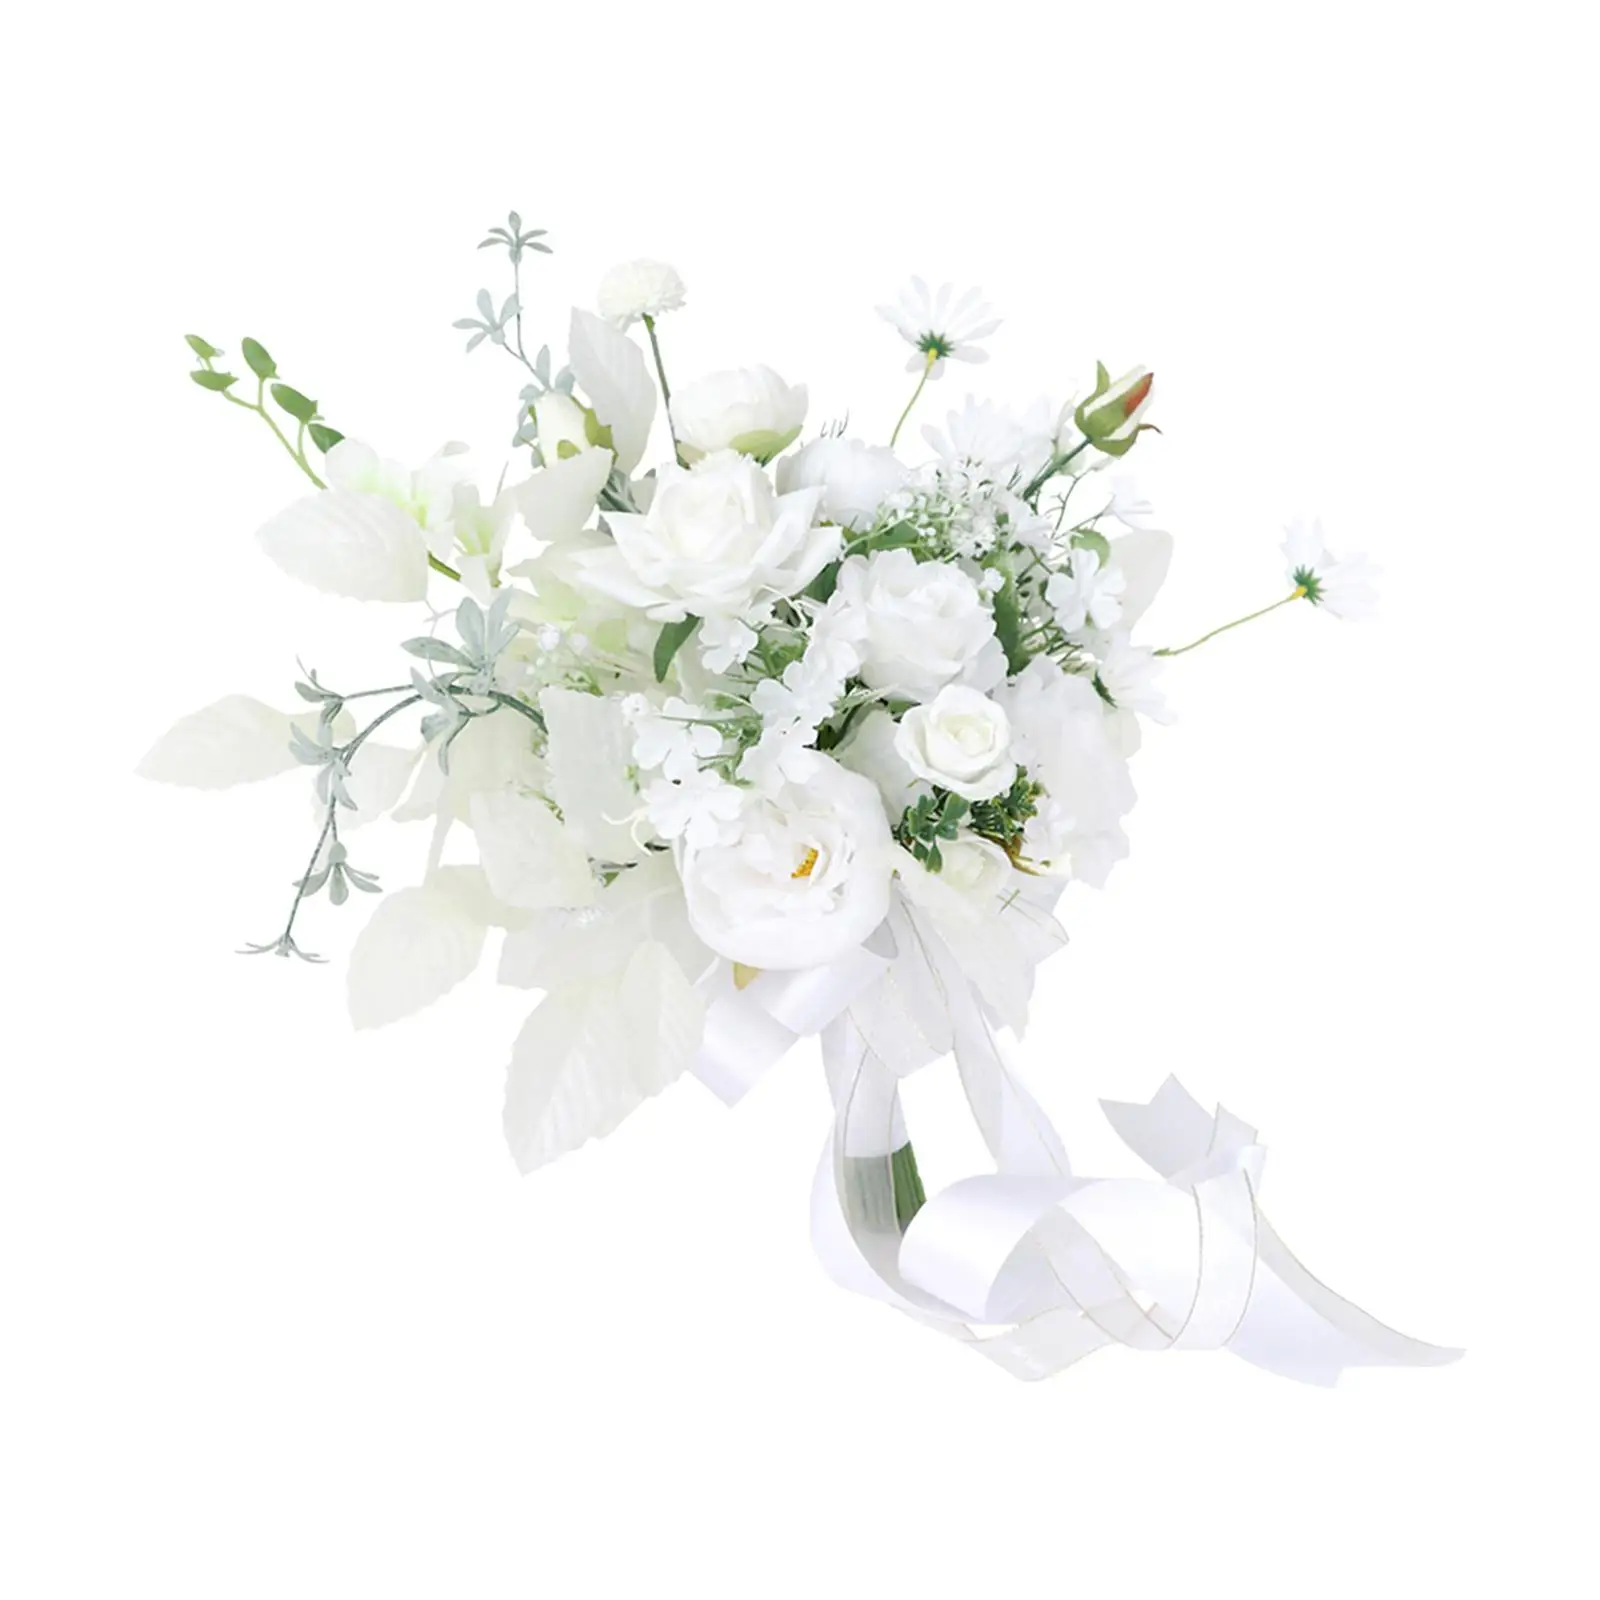 Romantic Bridal Bouquet Flower Arrangements Artificial Flowers Toss Bouquet for Party Anniversary Wedding Decor Supplies